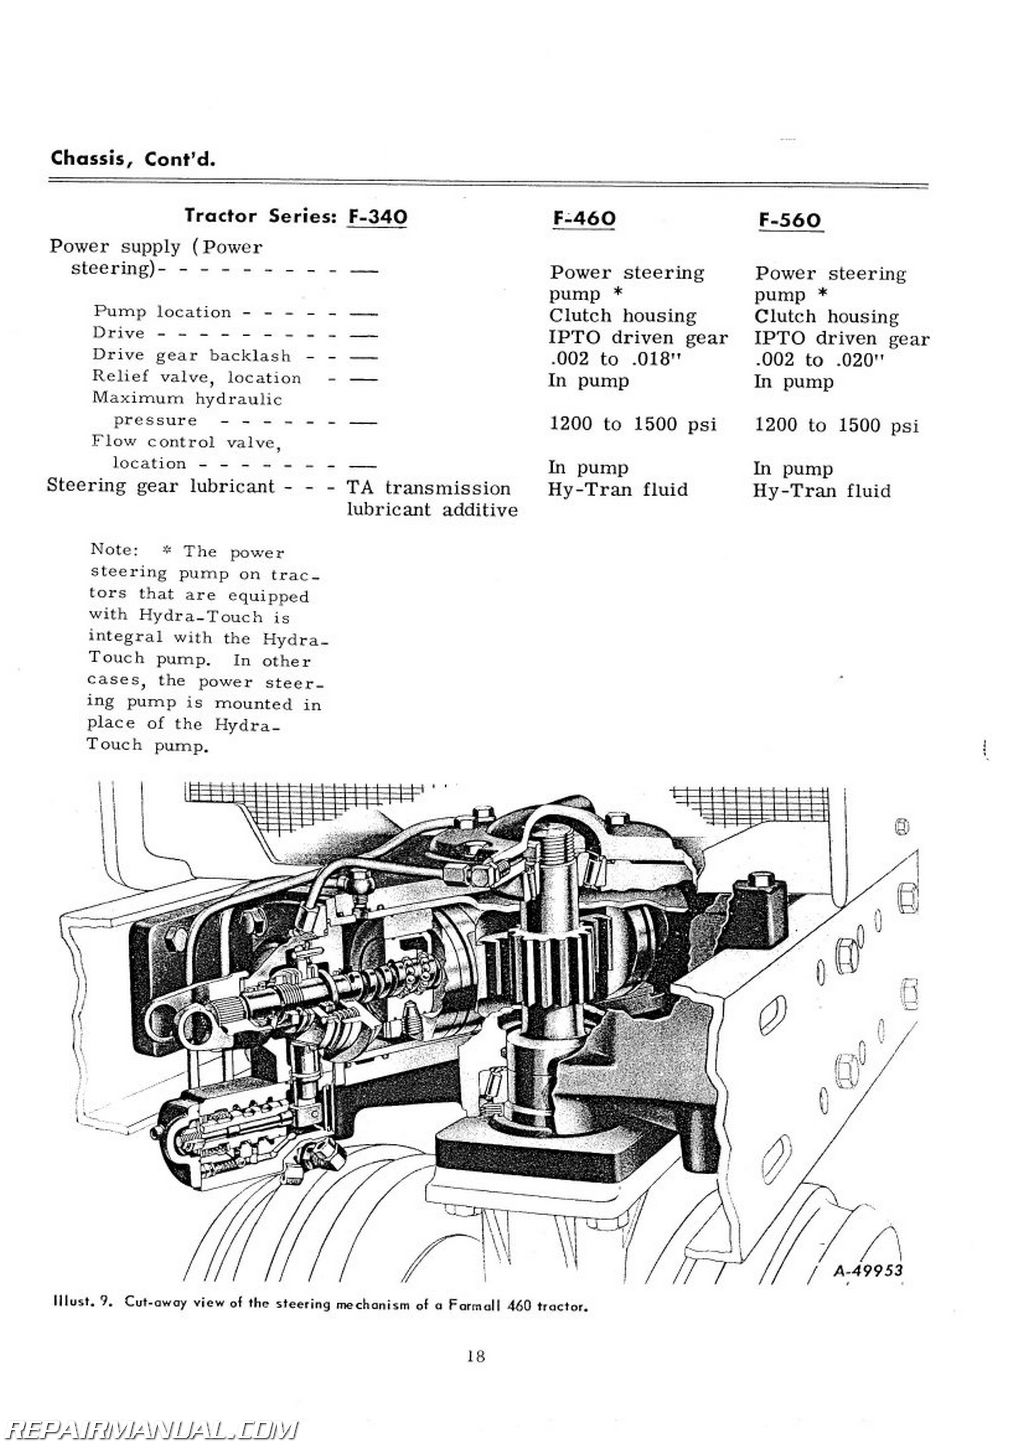 vacuflo model 26 manual